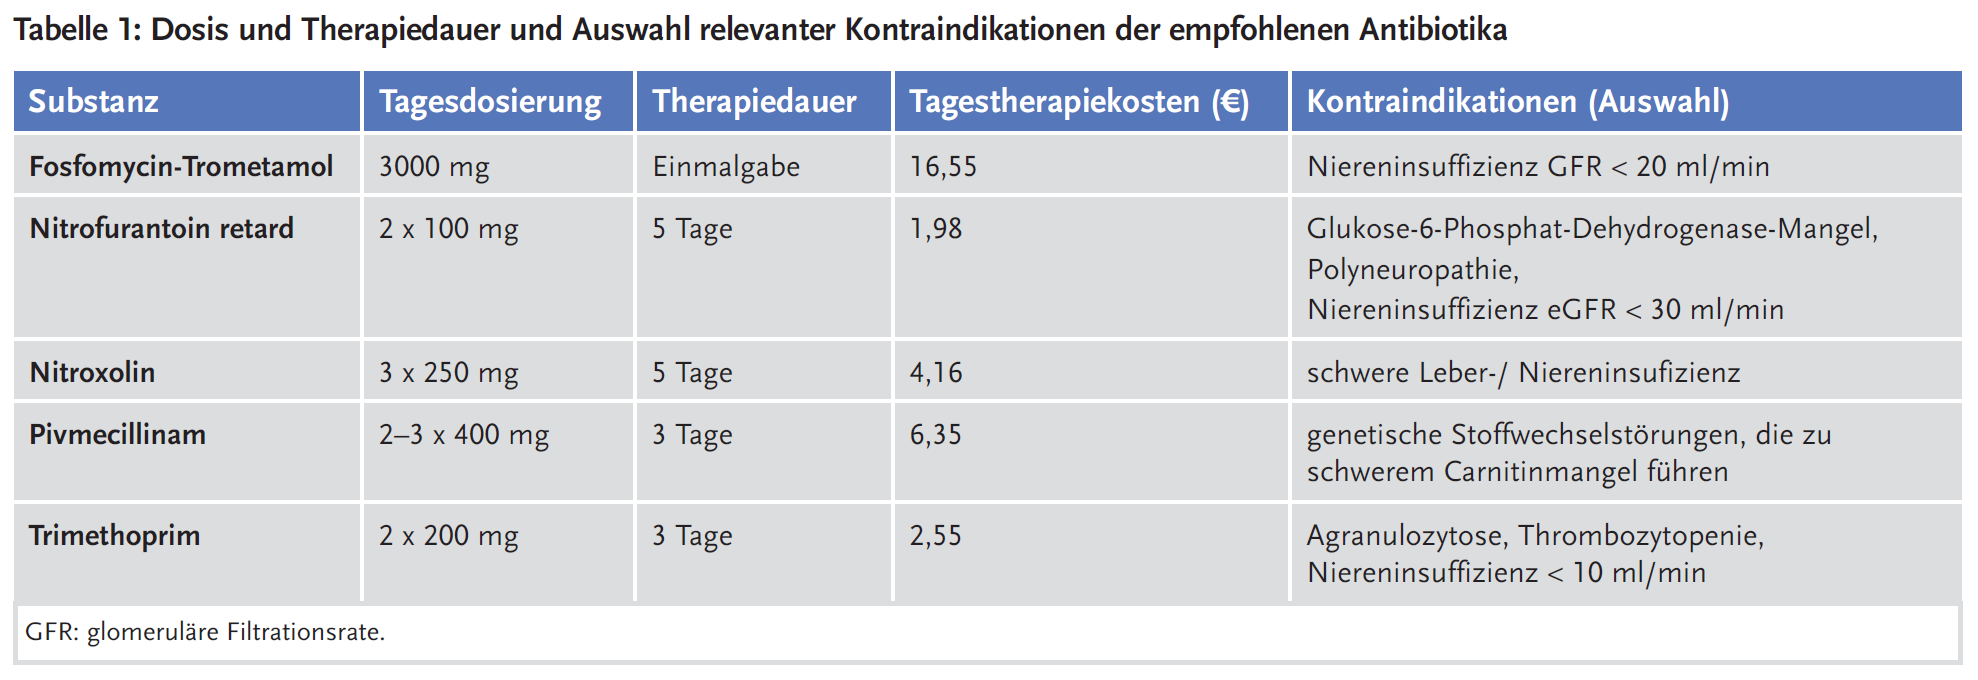 Tabelle 1: Dosis und Therapiedauer und Auswahl relevanter Kontraindikationen der empfohlenen Antibiotika